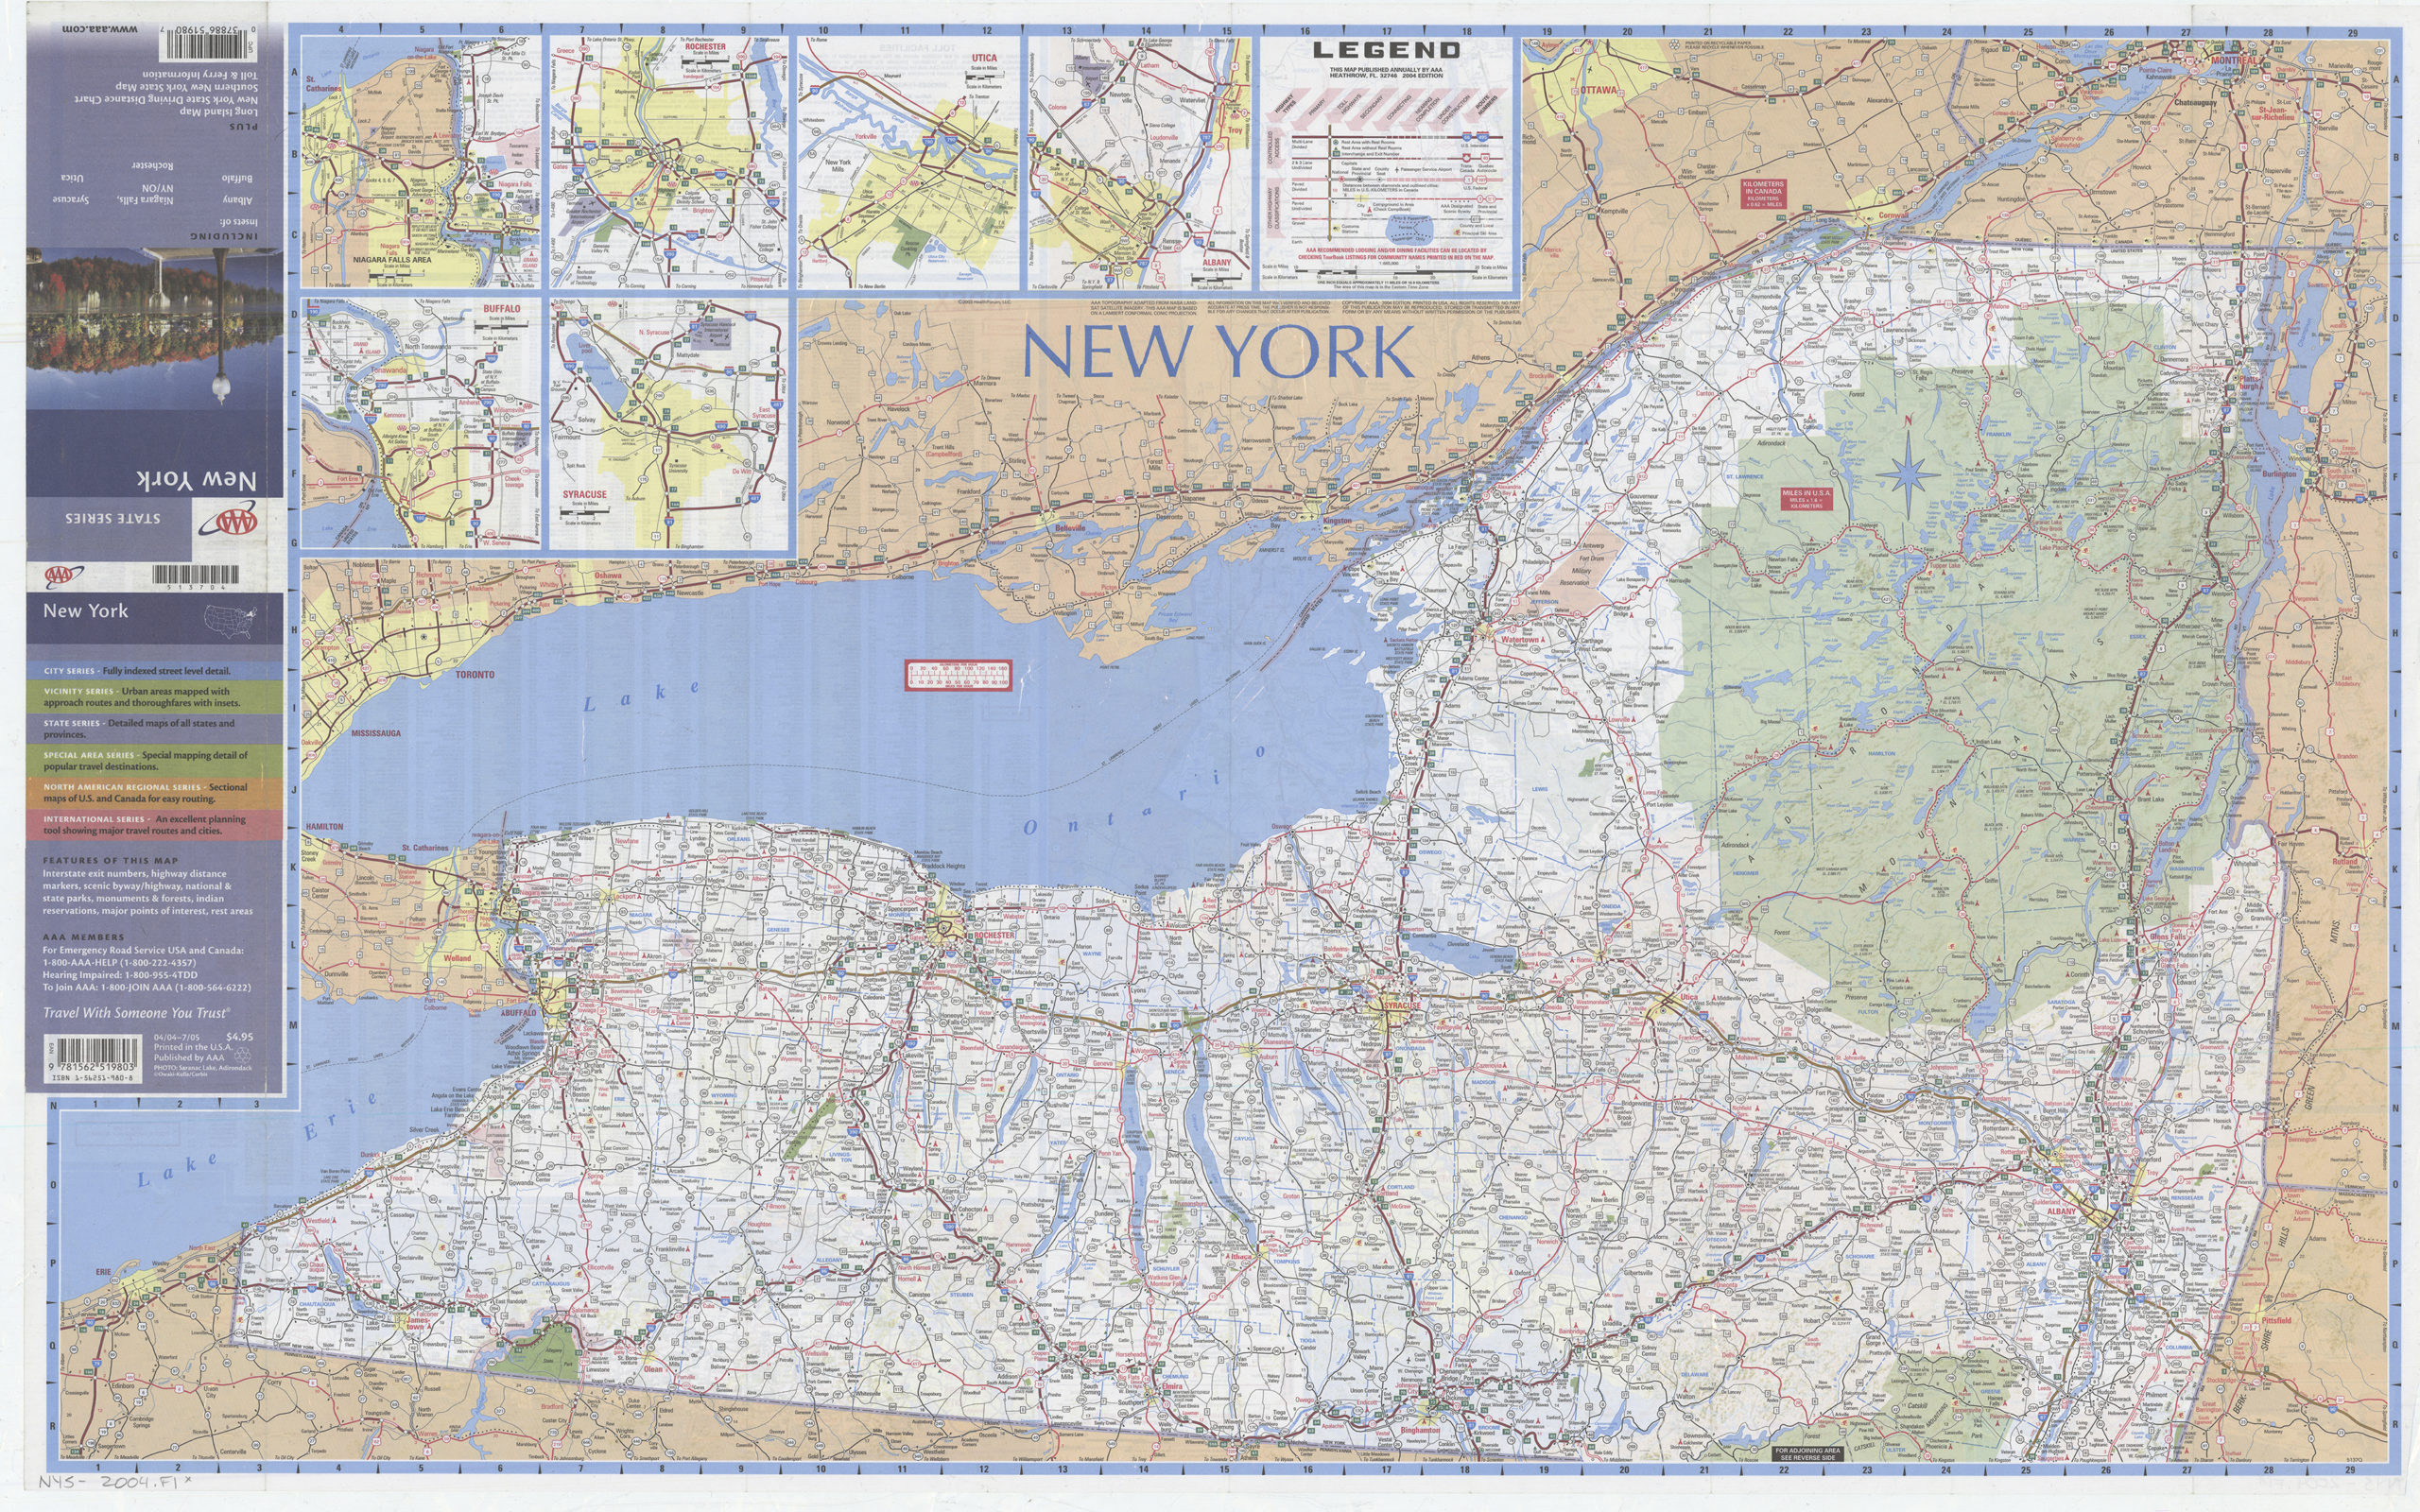 New York: including insets of Albany, Buffalo, Niagara Falls NY-ON